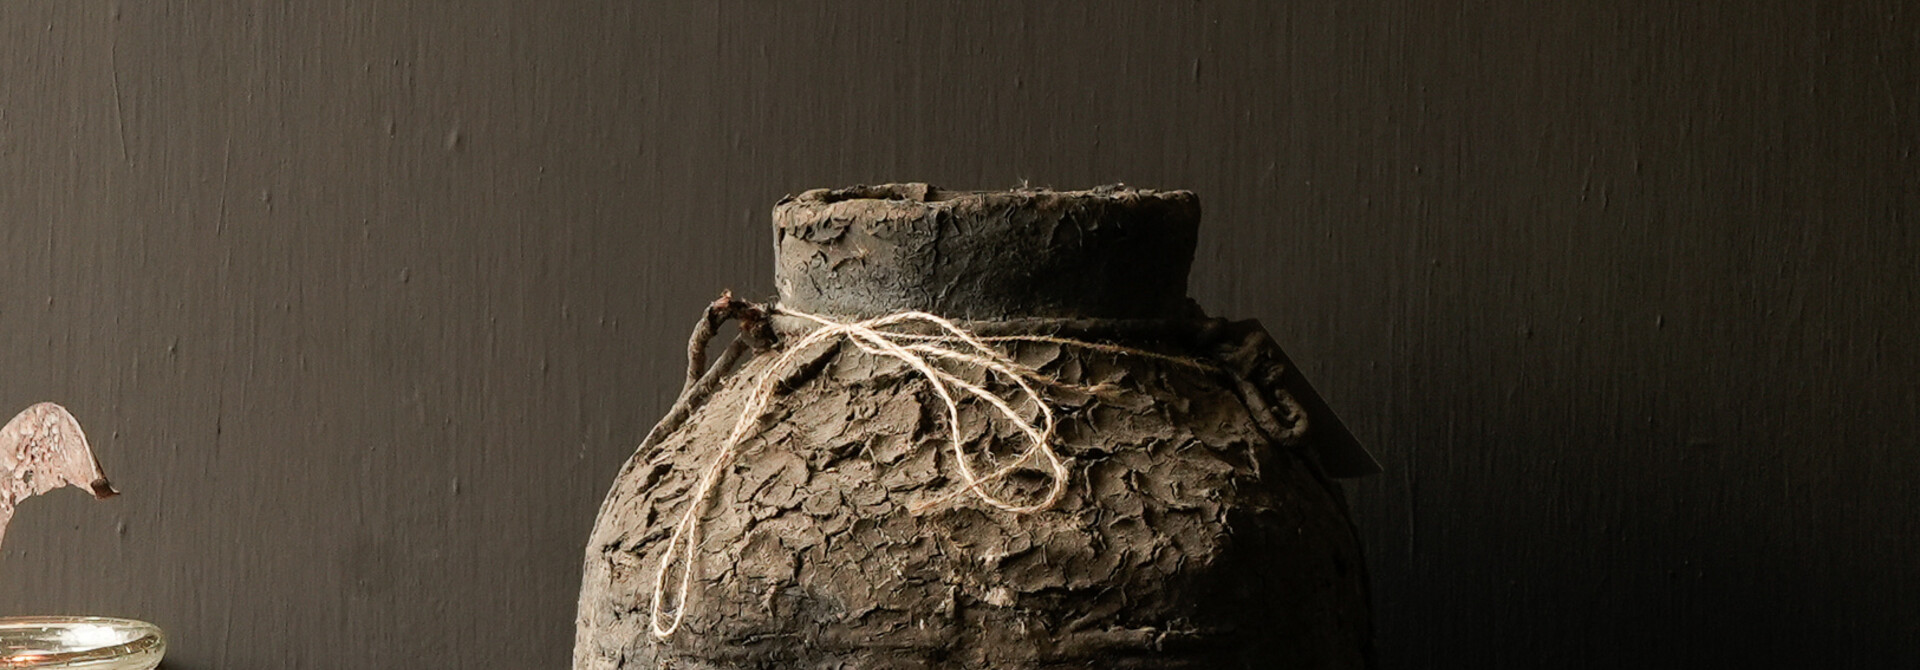 Einzigartiger Wabi-Sabi-Krug aus nepalesischem Korbgeflecht mit Deckel